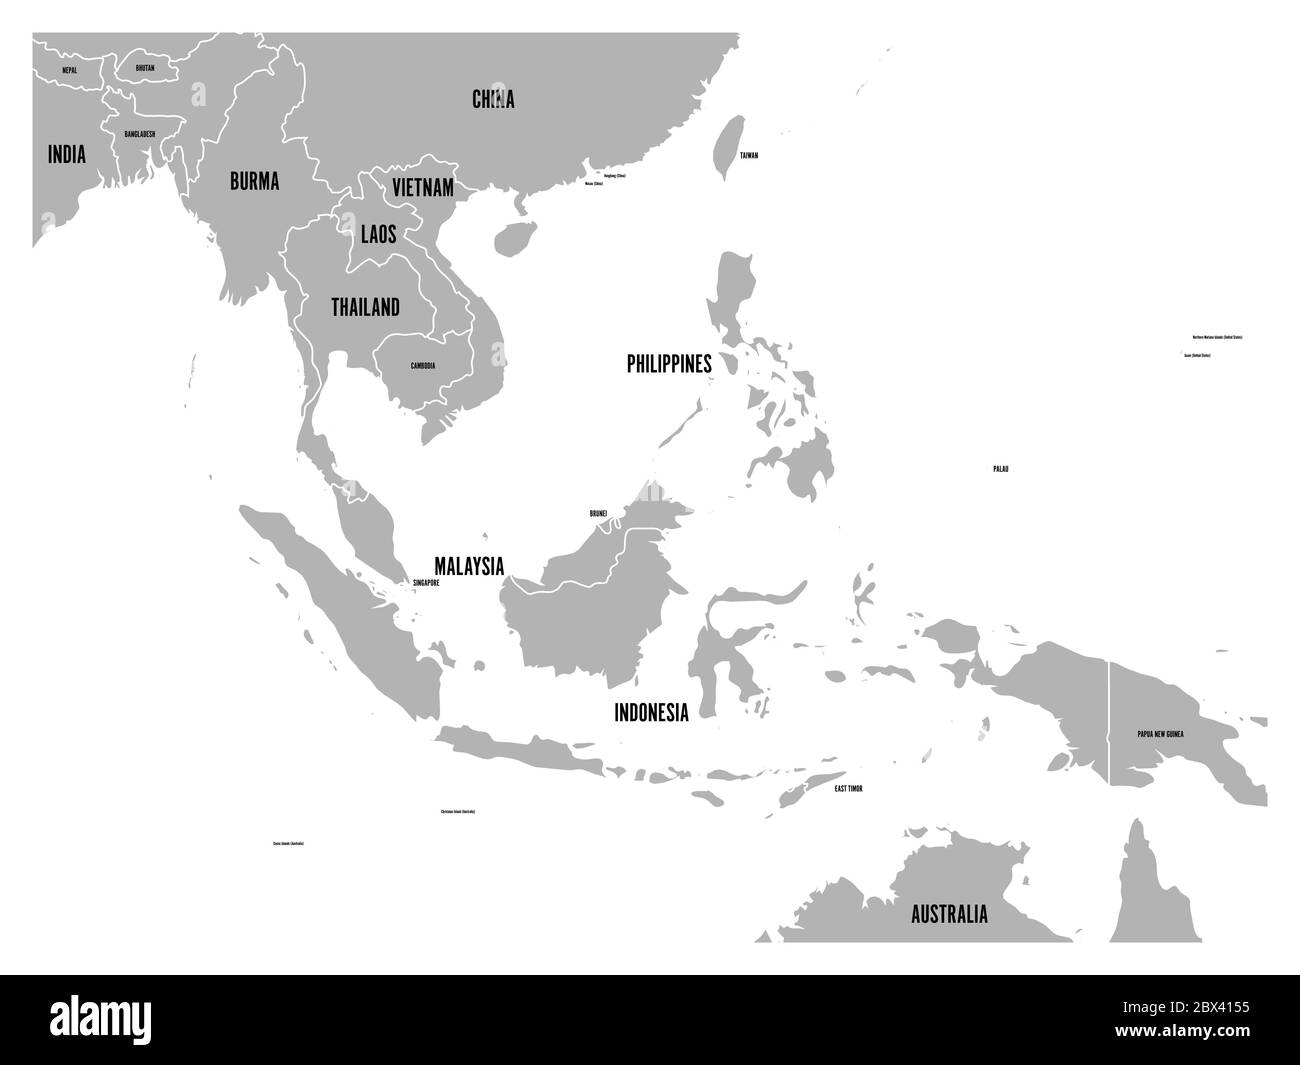 Mappa politica del Sud-Est asiatico. Terra grigia su sfondo bianco con etichette nere. Semplice illustrazione vettoriale piatta. Illustrazione Vettoriale